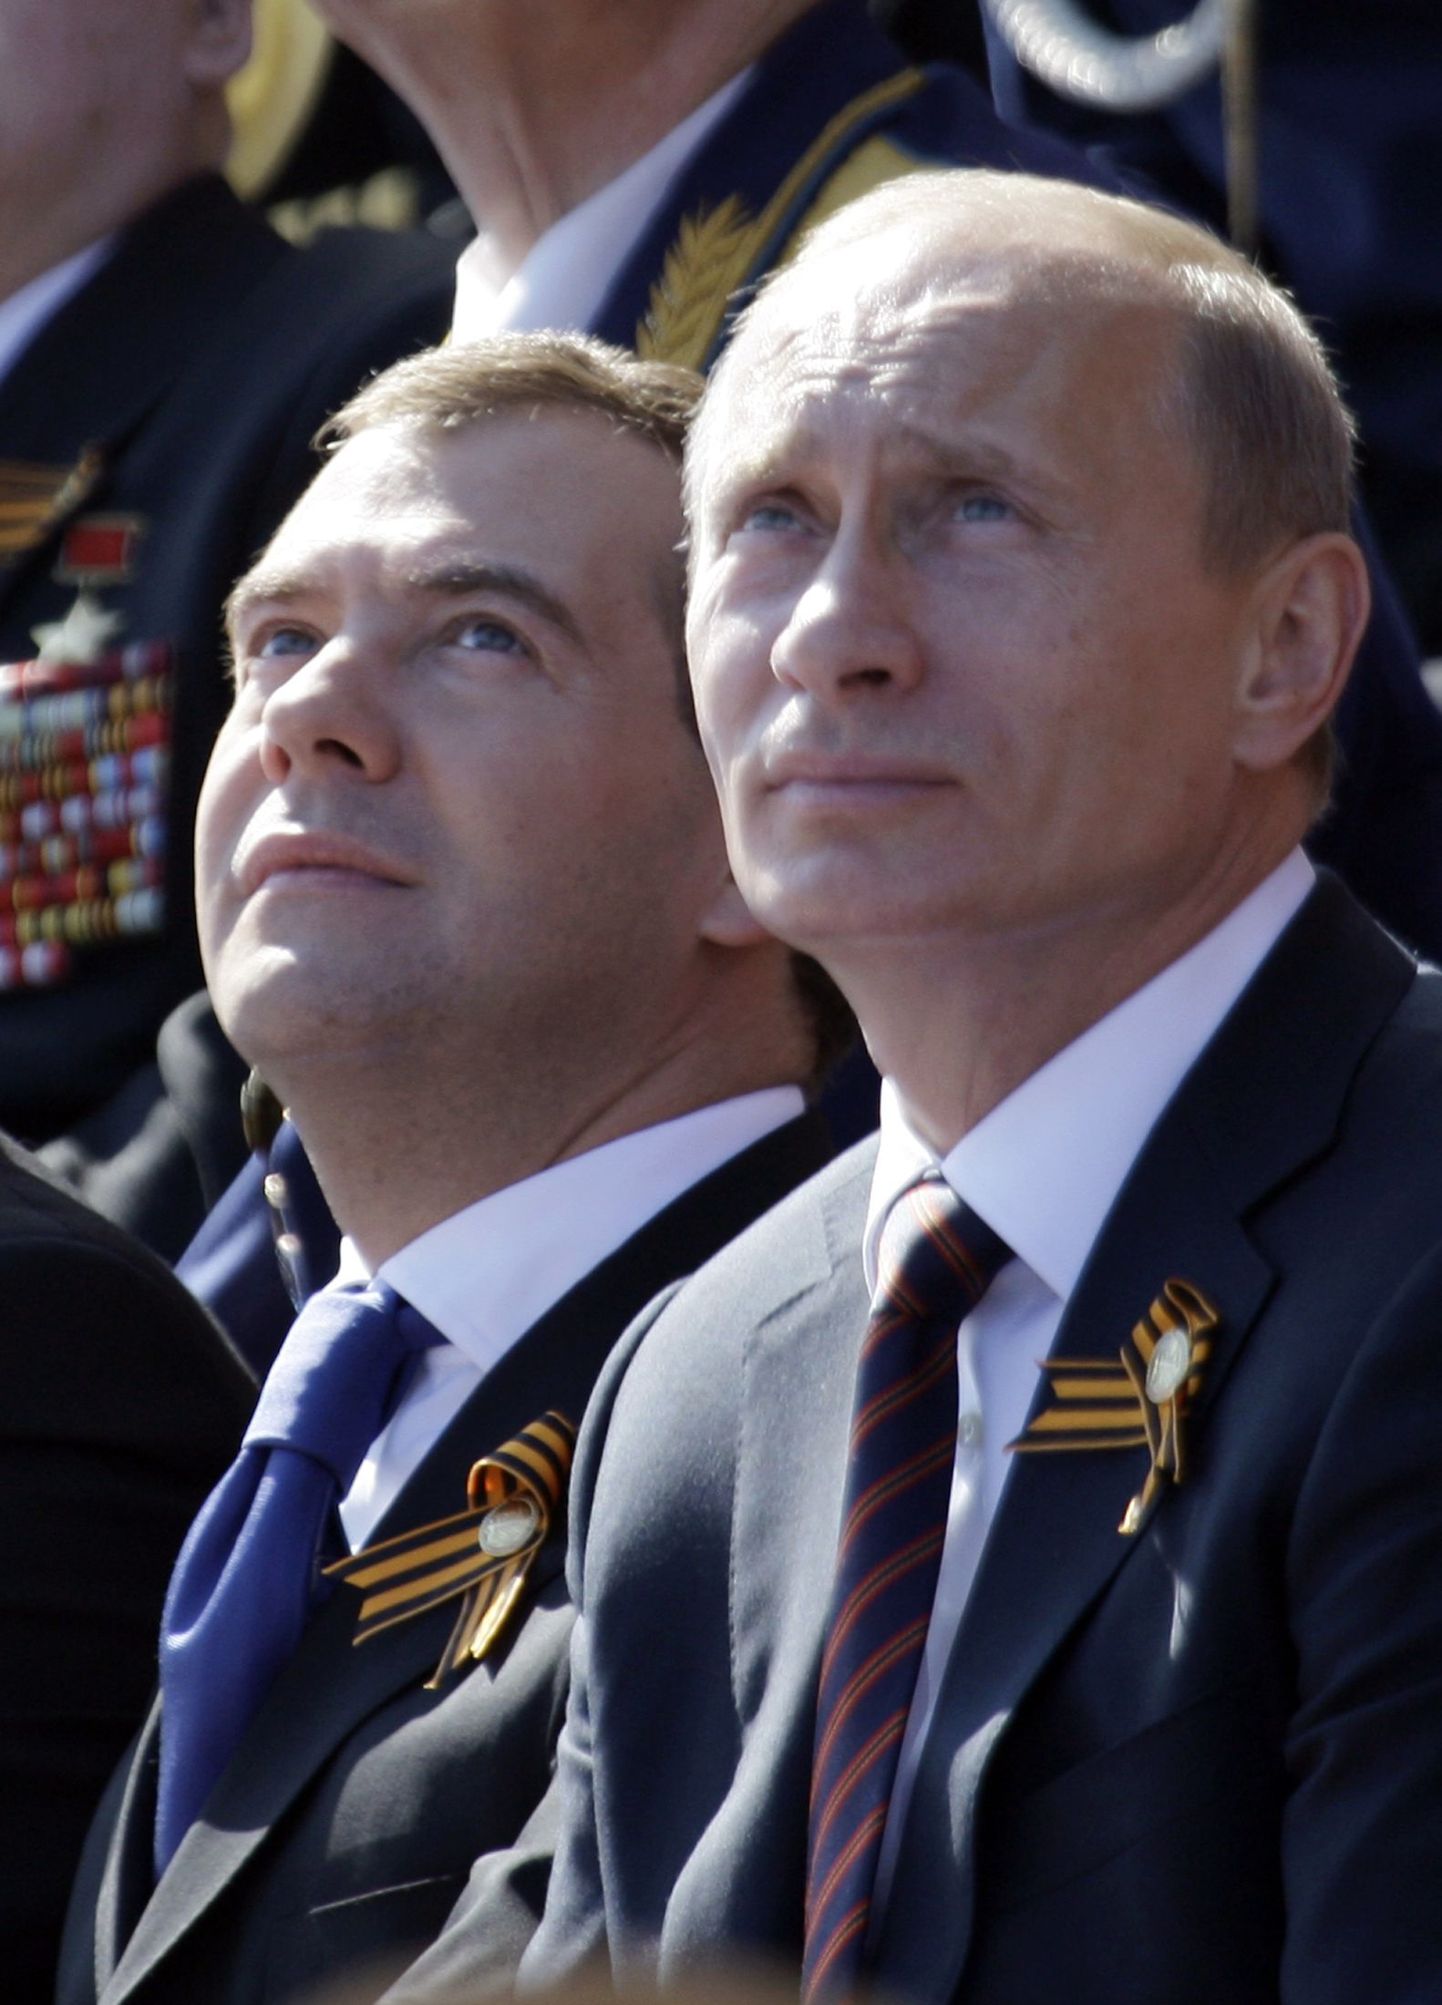 Venemaa juhttandem, peaminister Vladimir Putin ja president Dmitri Medvedev kõrvuti, mõlemal Georgi lindid rinnas, vaatamas suurt sõjaväeparaadi Moskva Punasel väljakul.